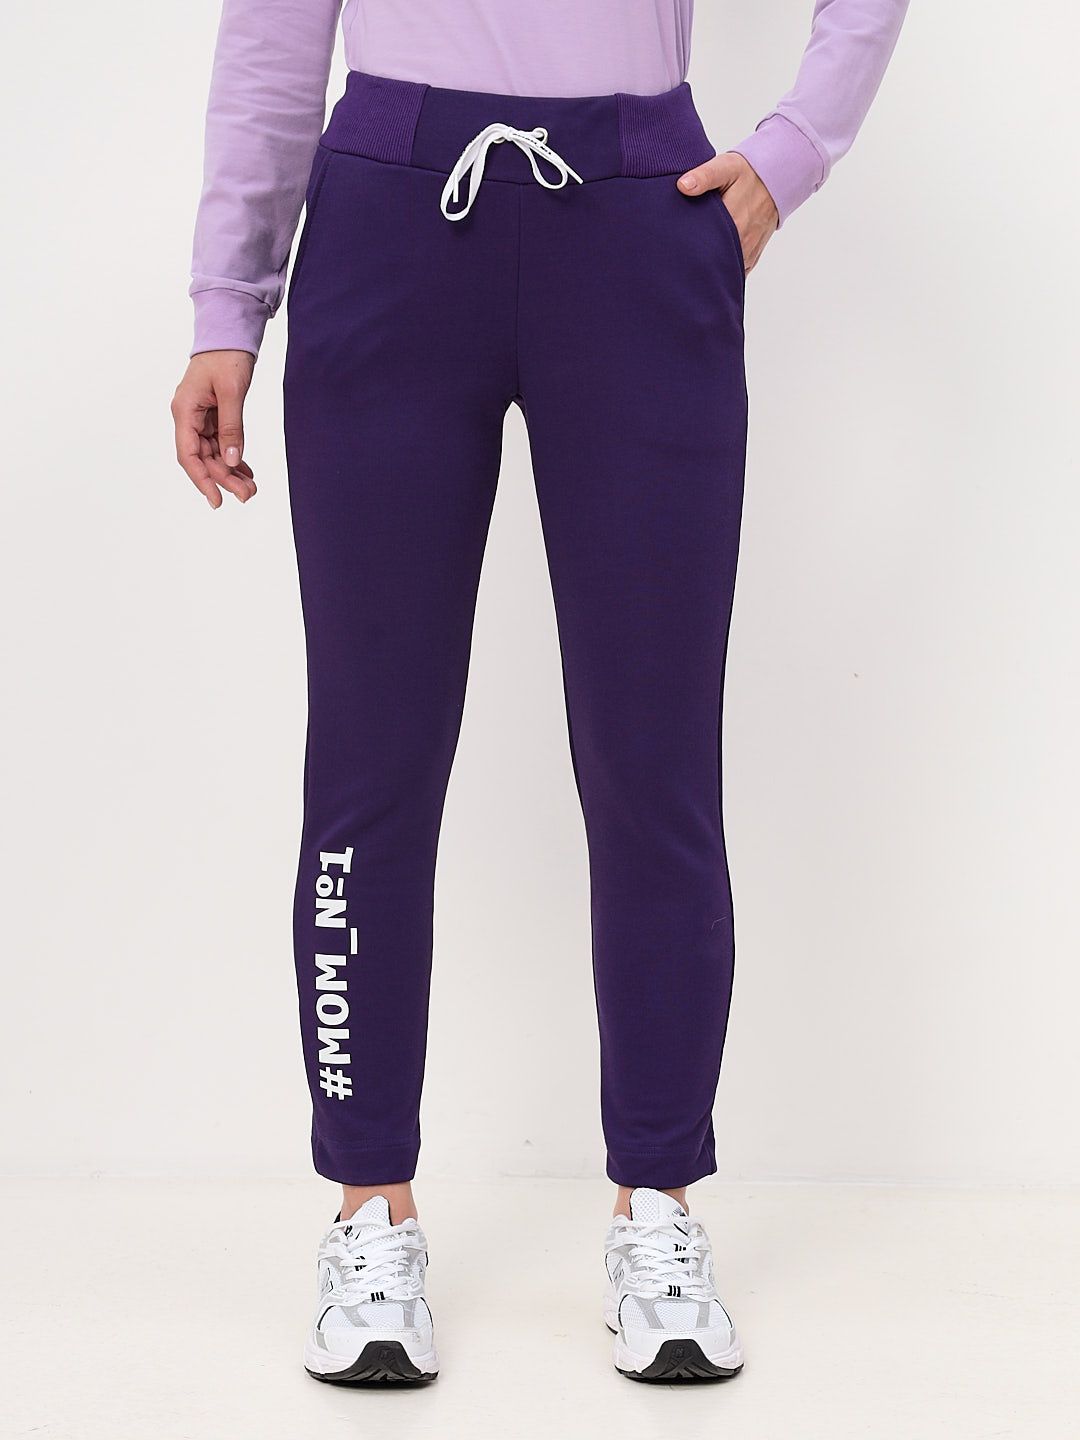 Спортивные брюки женские MOM №1 MOM-0136 фиолетовые S